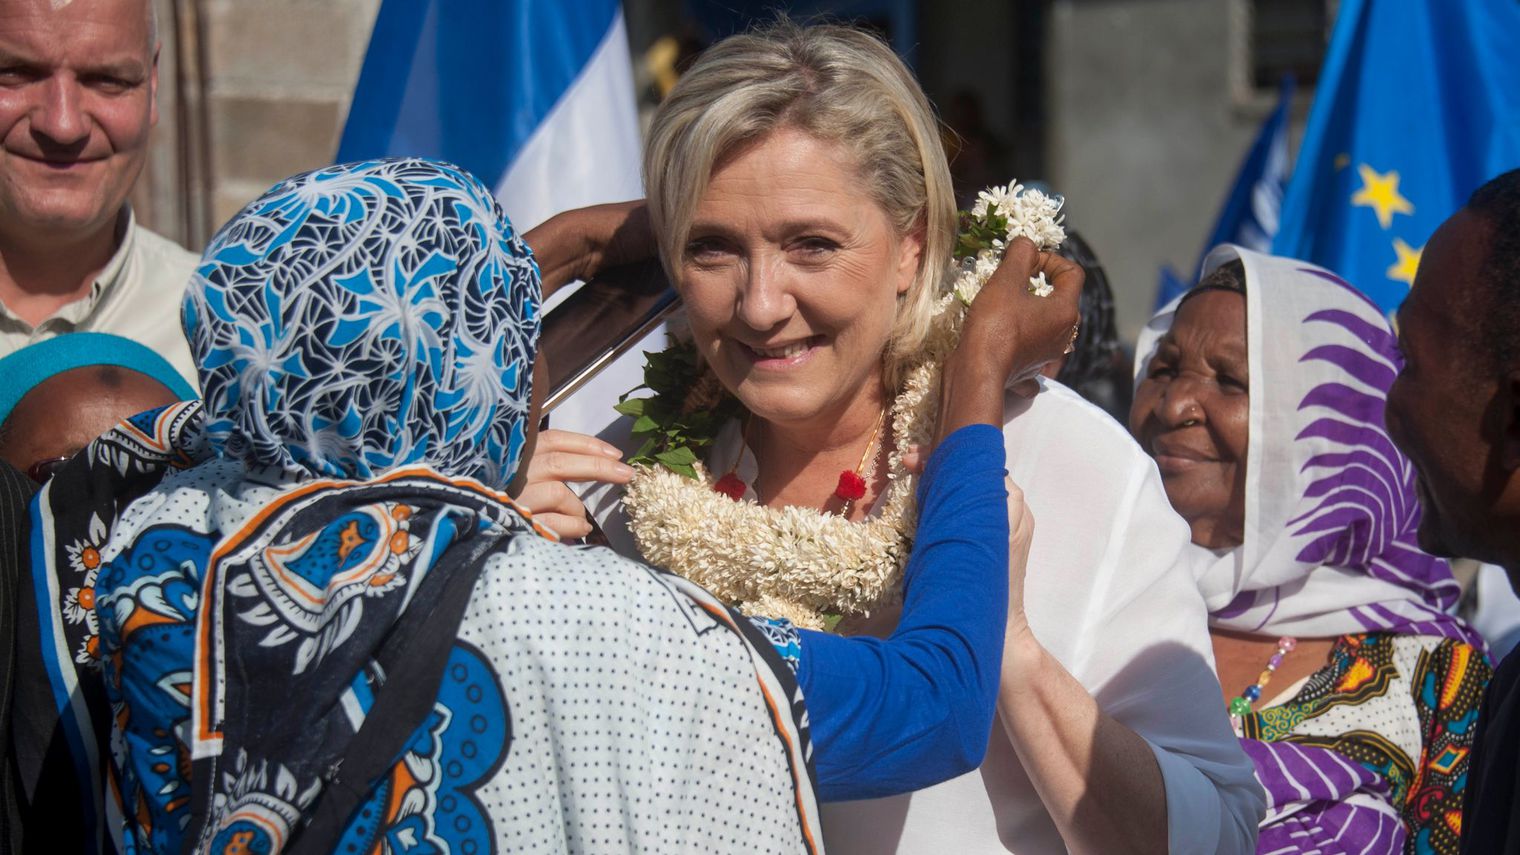 Législative partielle : Démarche inédite de Marine Le Pen, qui appelle à voter LR à Mayotte